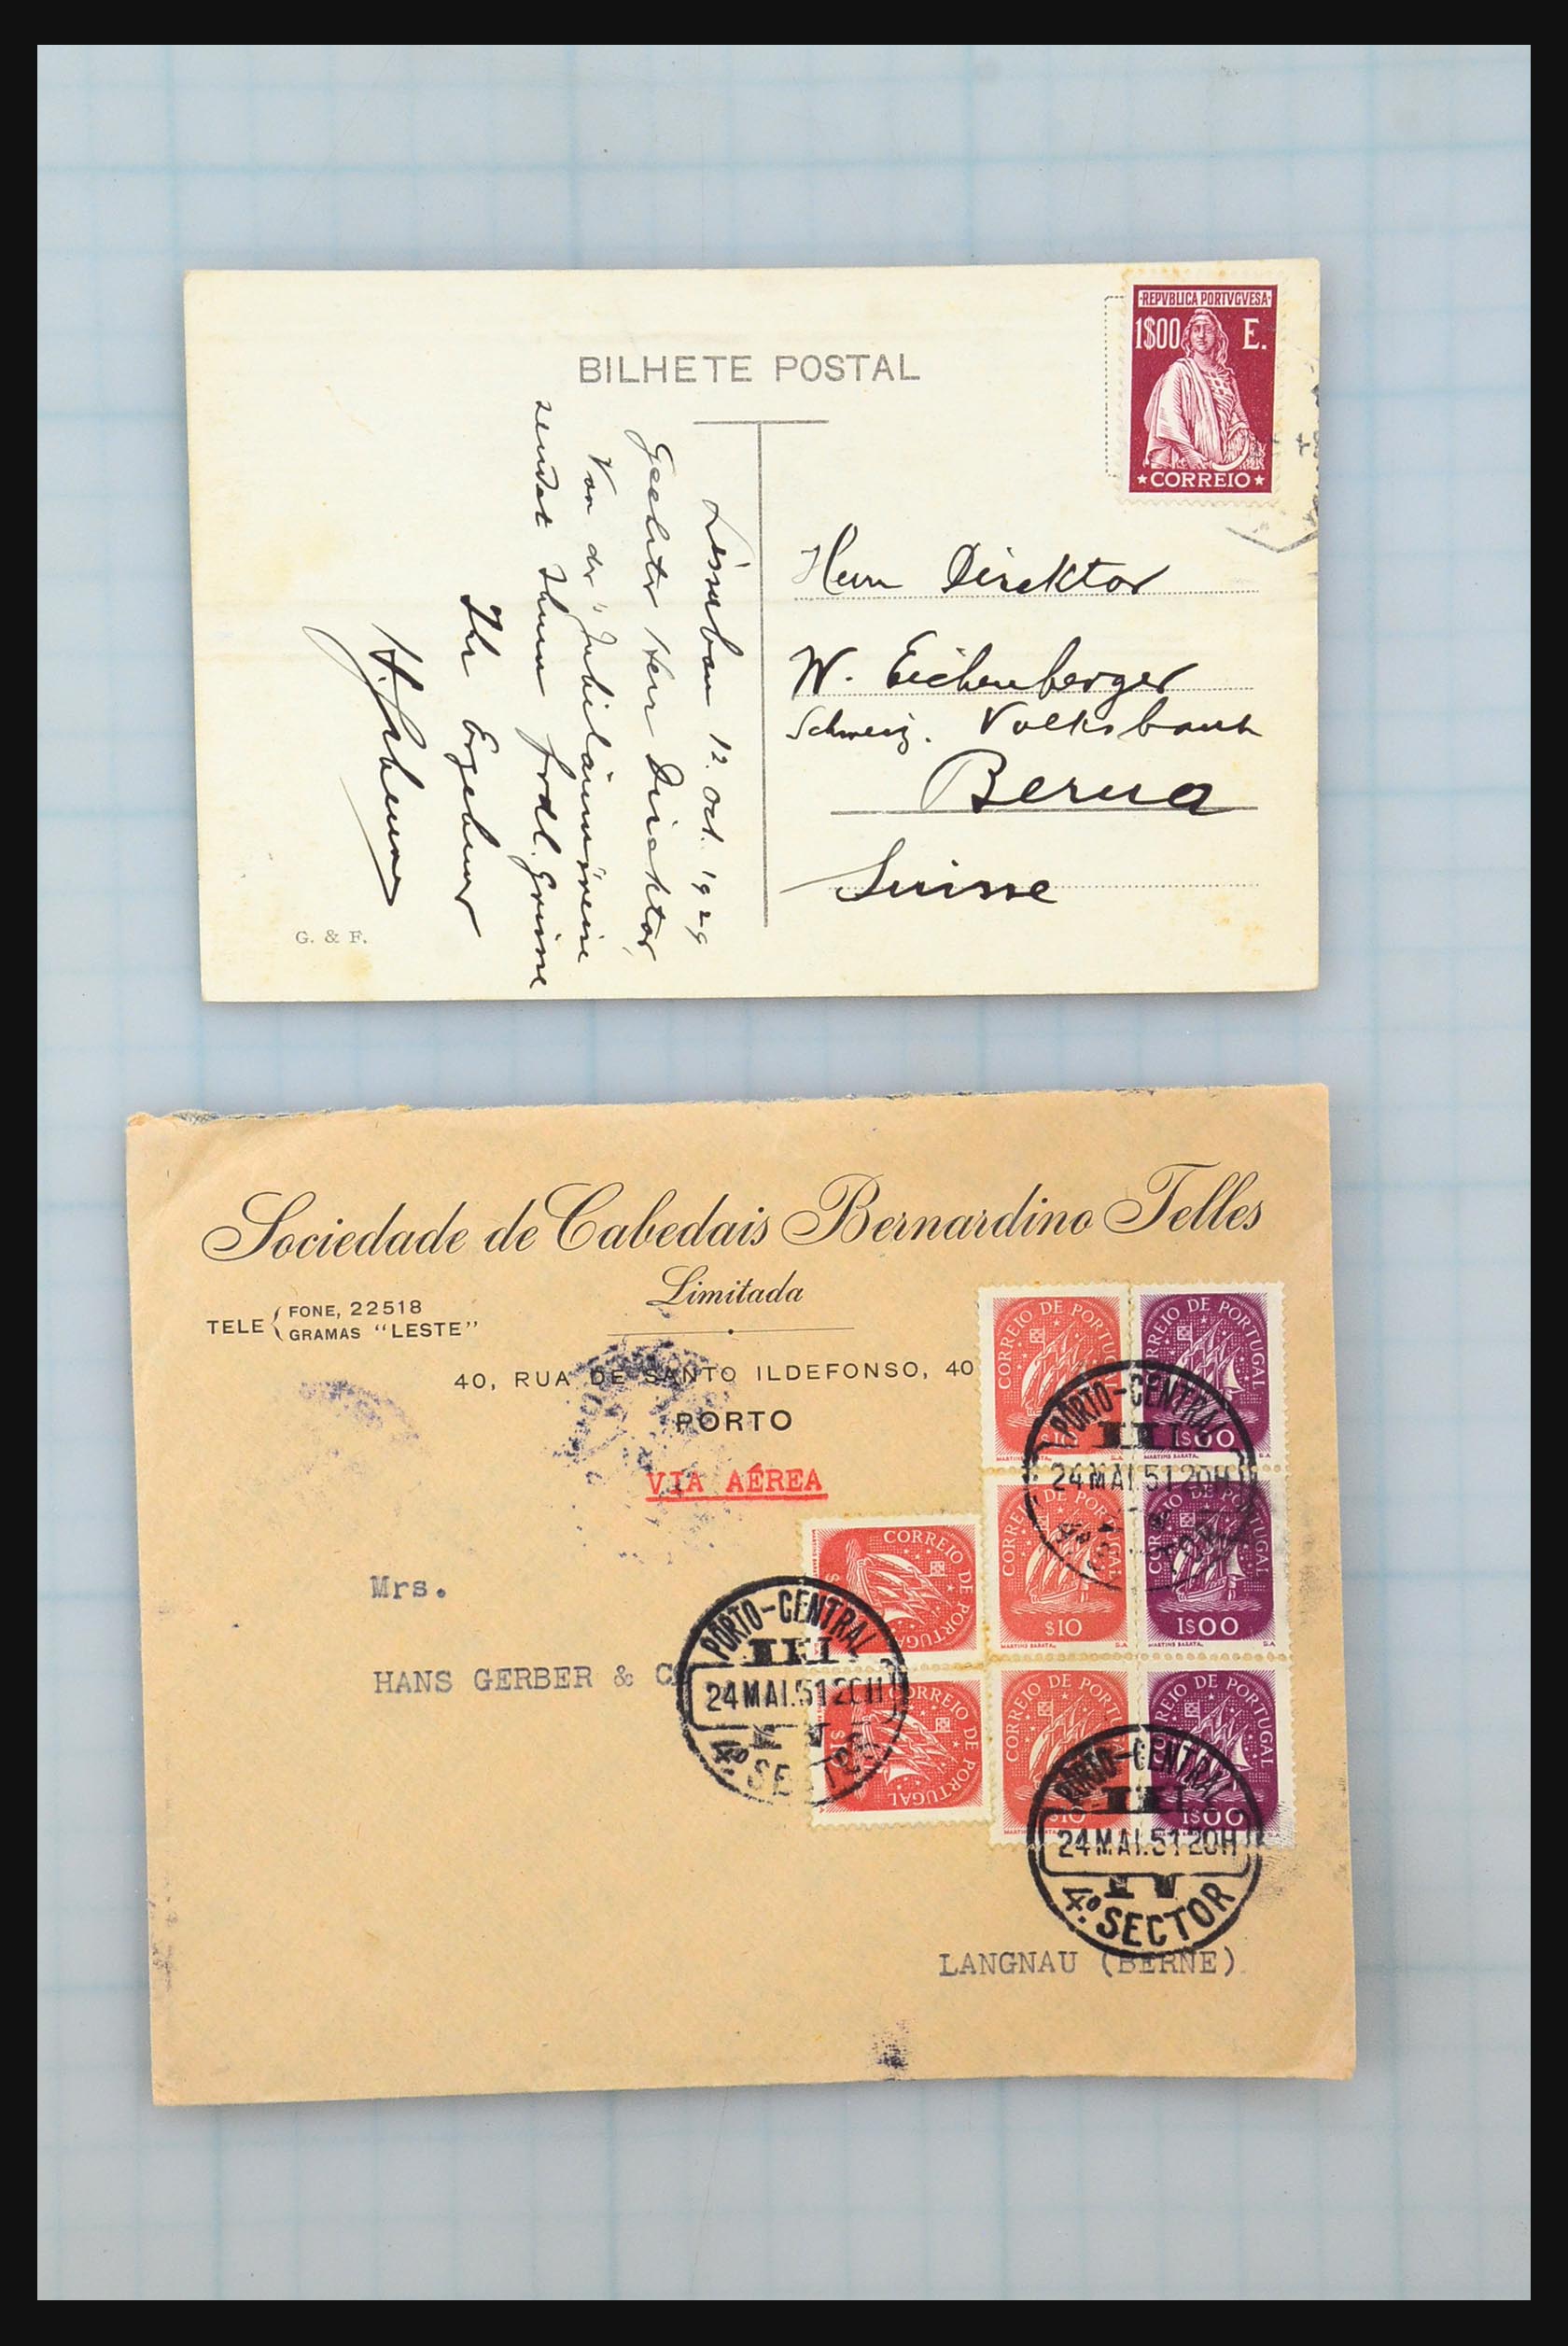 31358 238 - 31358 Portugal/Luxemburg/Griekenland brieven 1880-1960.